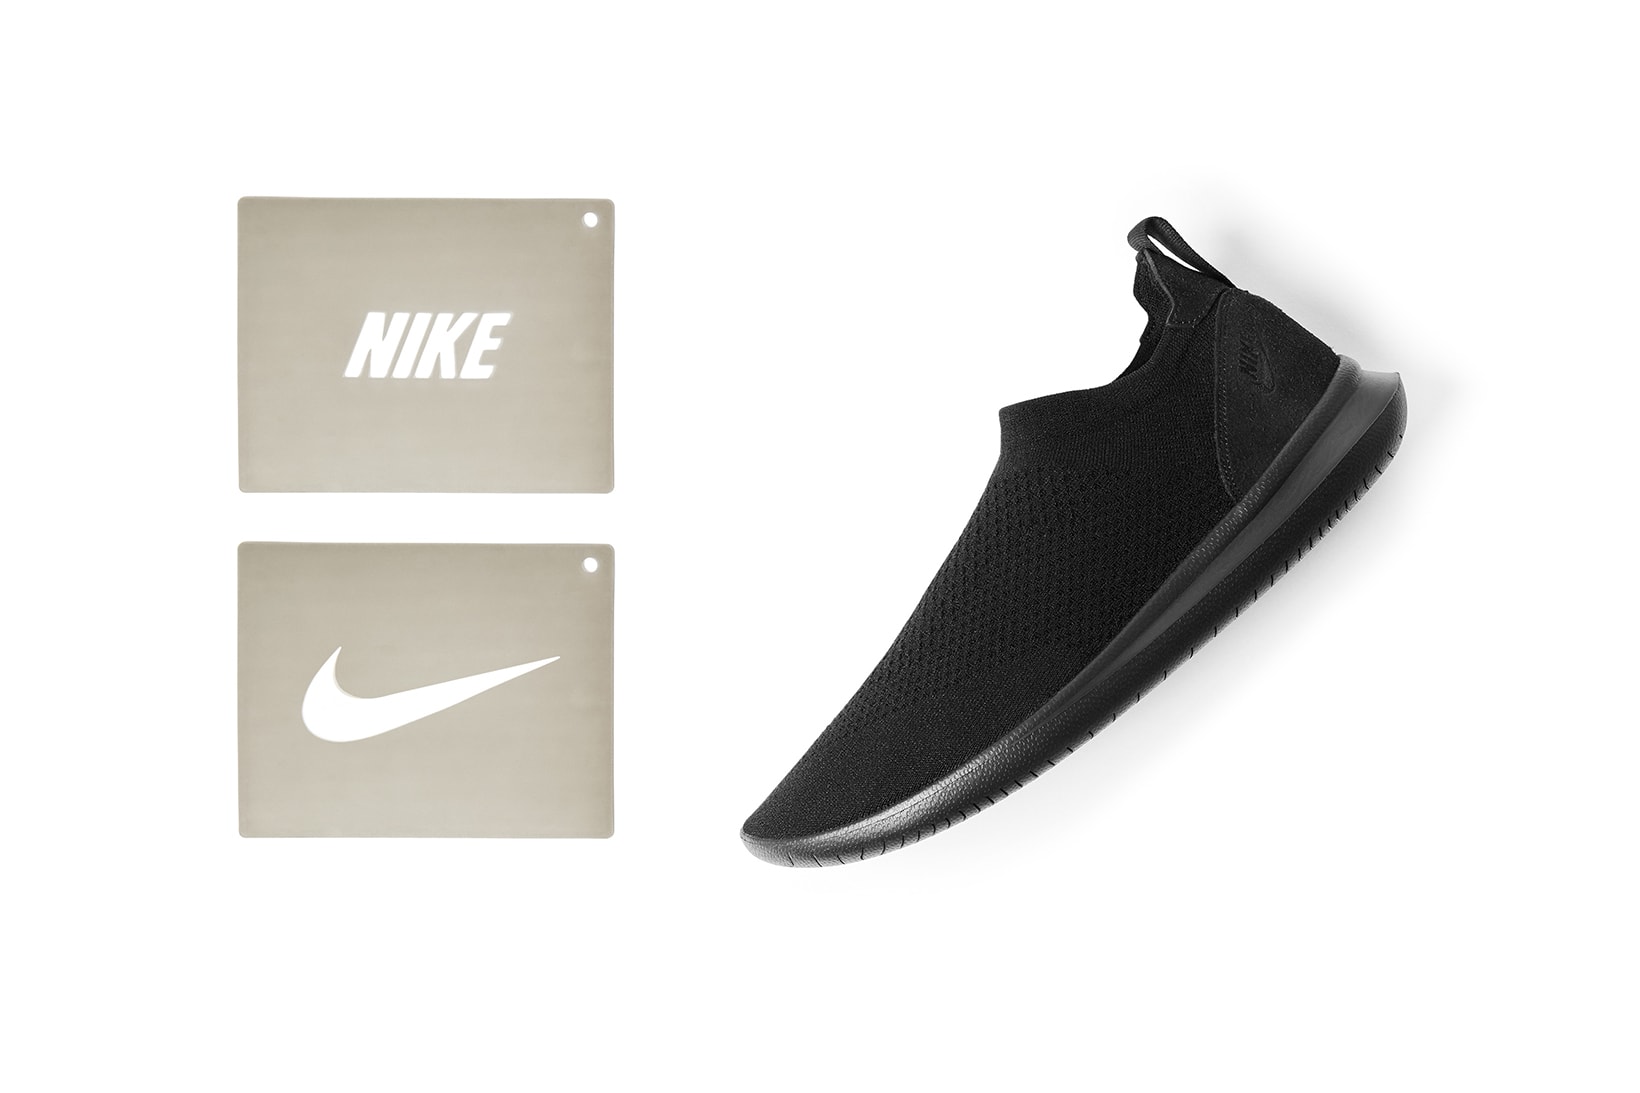 Nike Gakou Flyknit Stencil Shoe Black White Sneakers Shoes Footwear Stencils 2017 August 24 Release Date Info